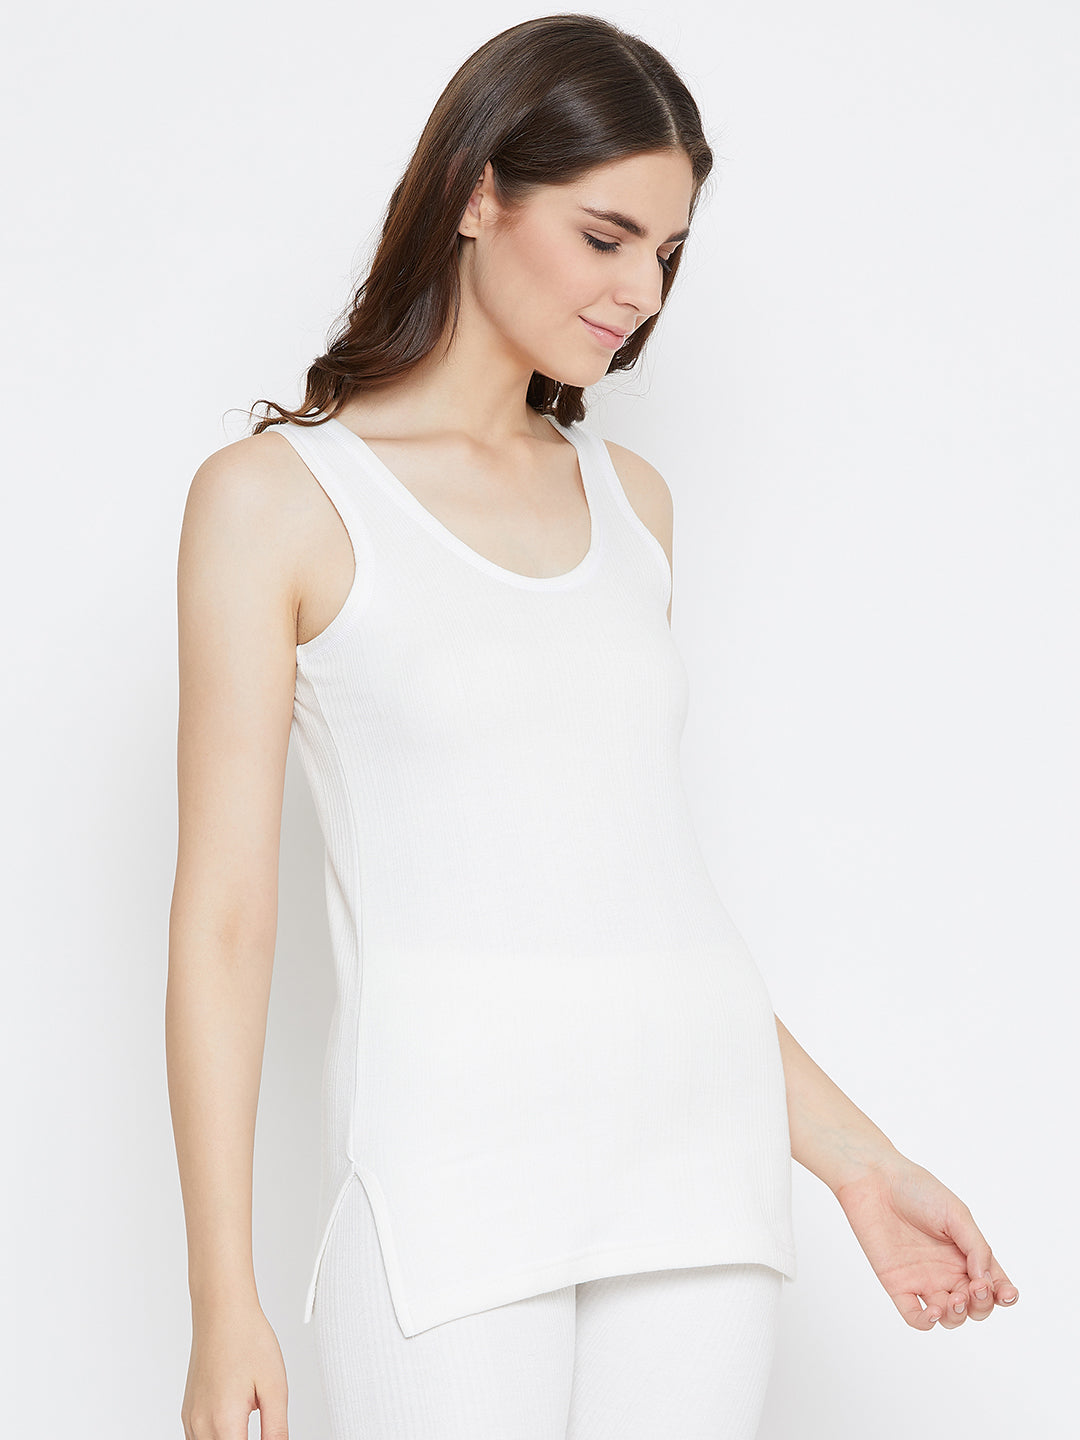 Zimfit Women's White Half Sleeves Thermal Top whitemoon.in